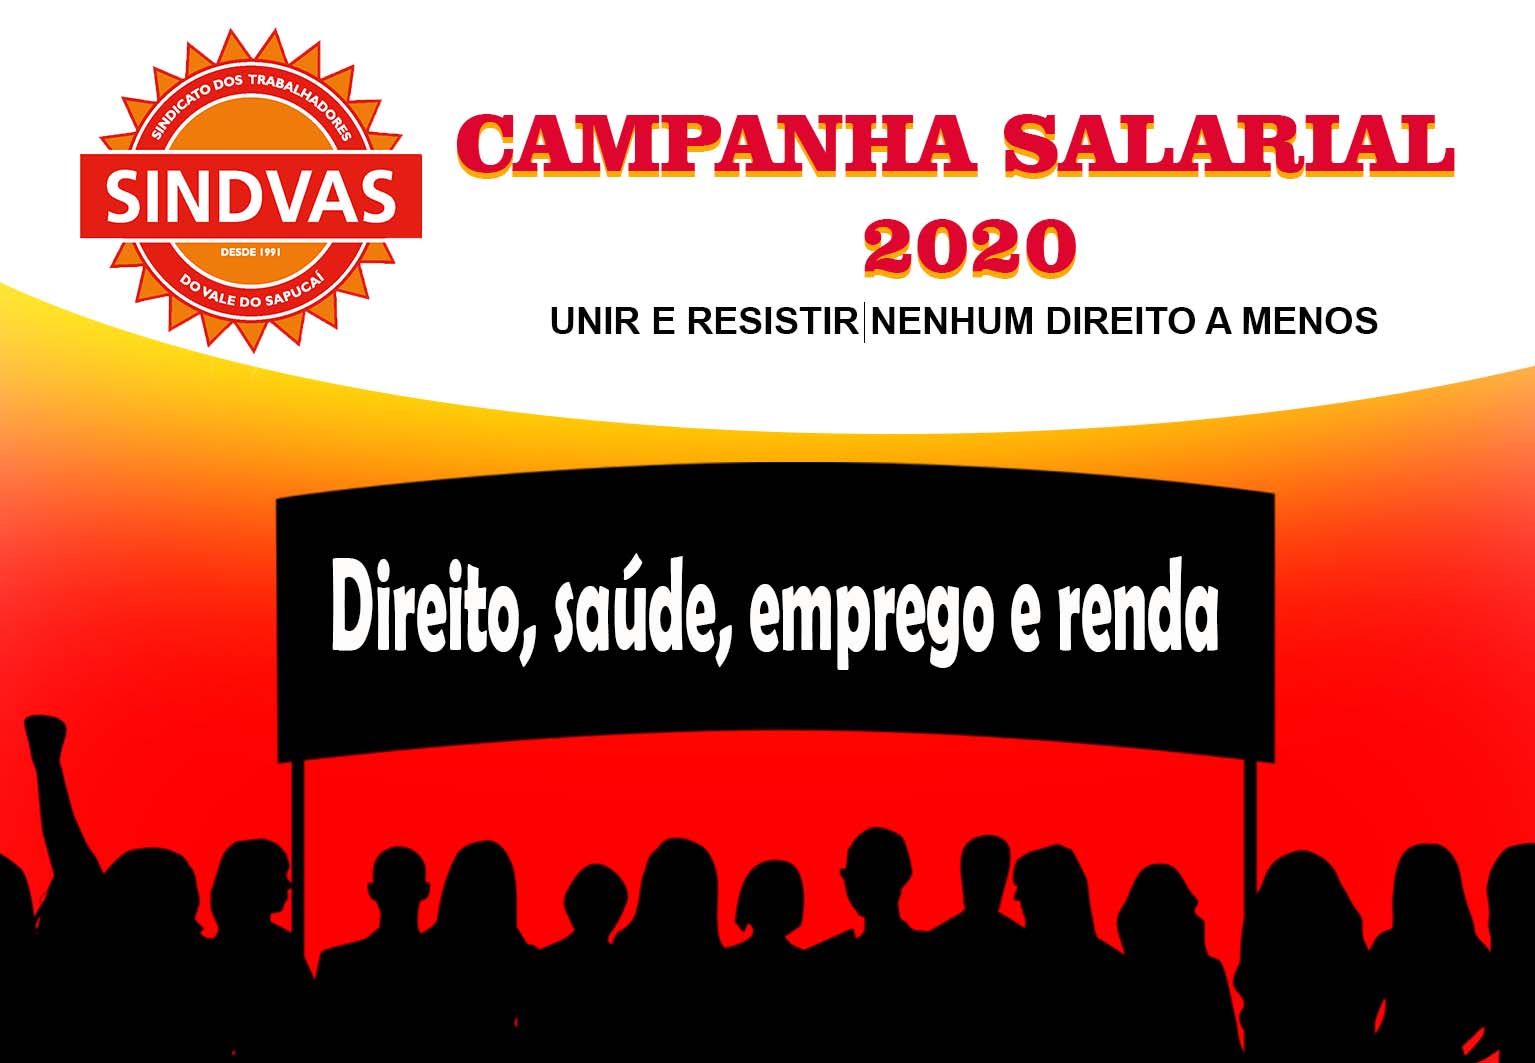 CAMPANHA-SALARIAL-2020 Campanha salarial 2020